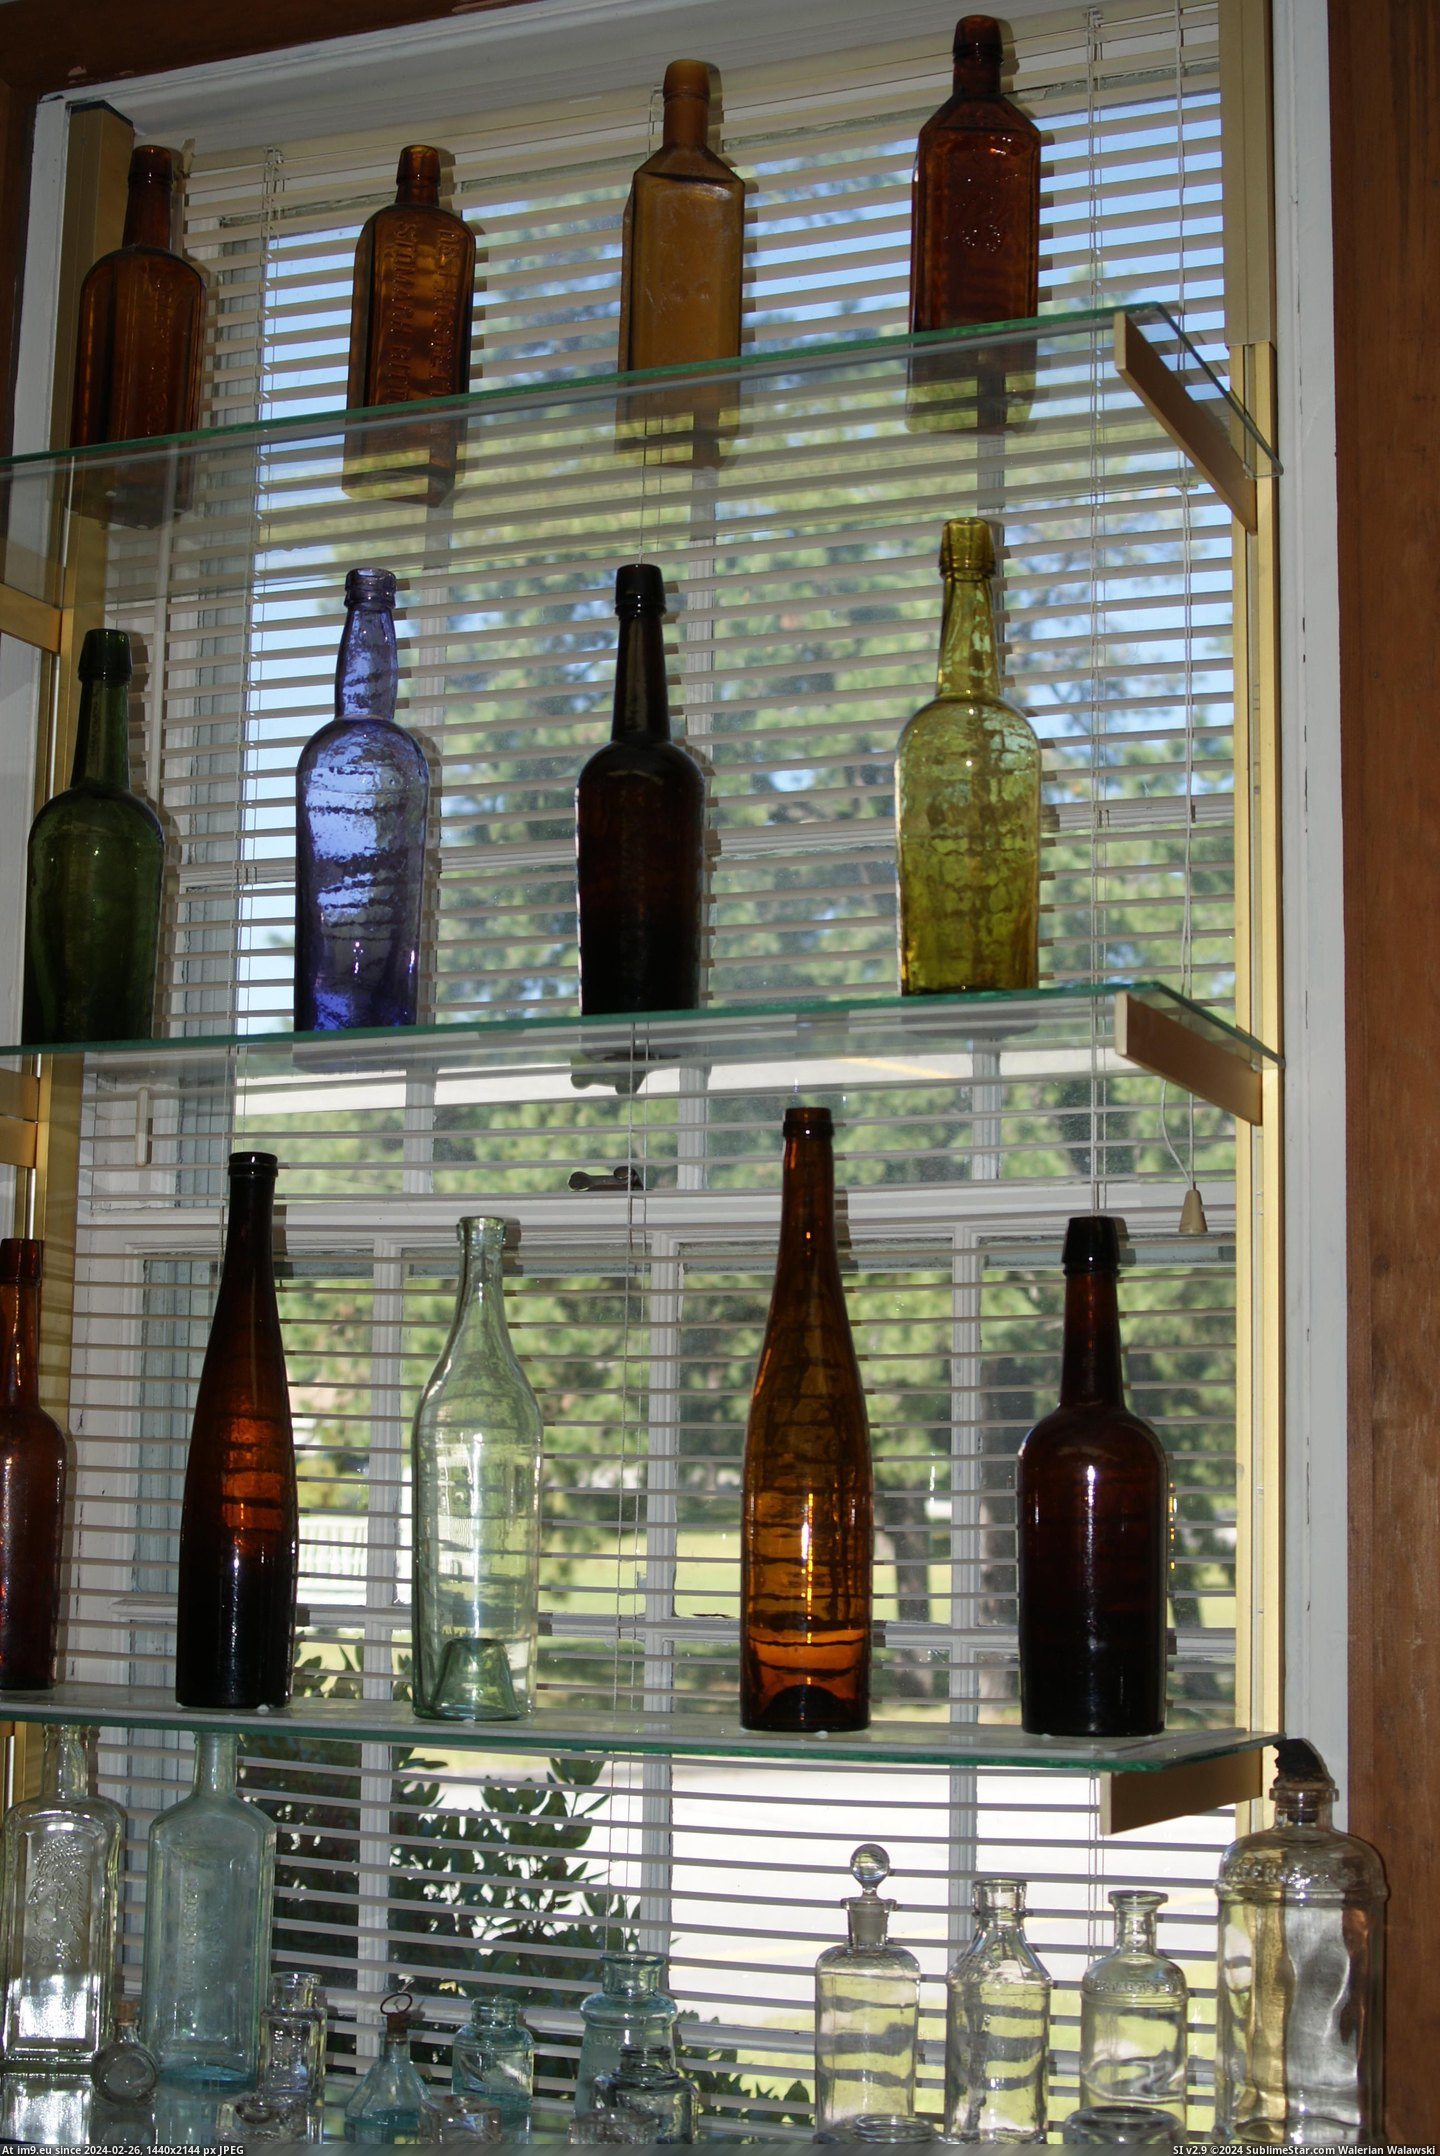 #Museum #Maine #Naples #Bottle MAINE BOTTLE MUSEUM NAPLES (13) Pic. (Bild von album MAINE BOTTLE MUSEUM))